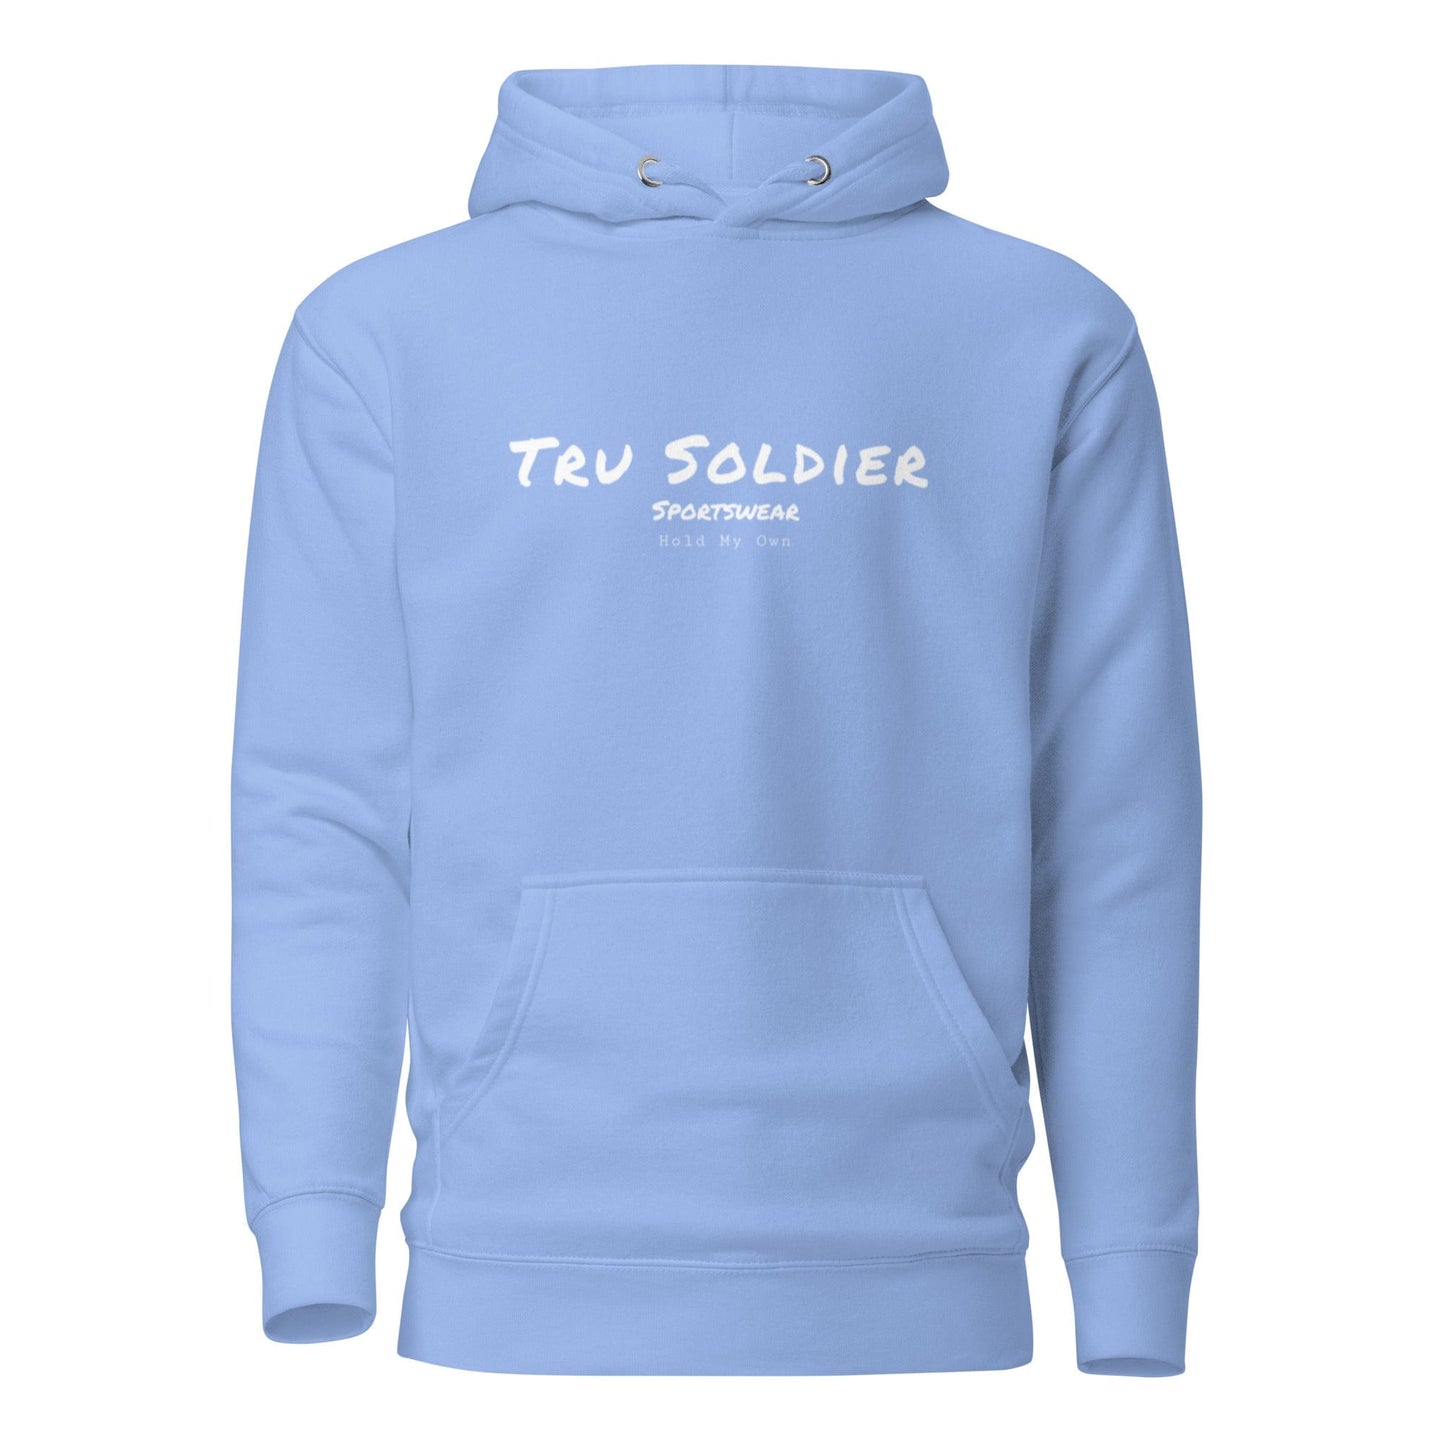 Tru Soldier Sportswear  Carolina Blue / S Signature Hoodie